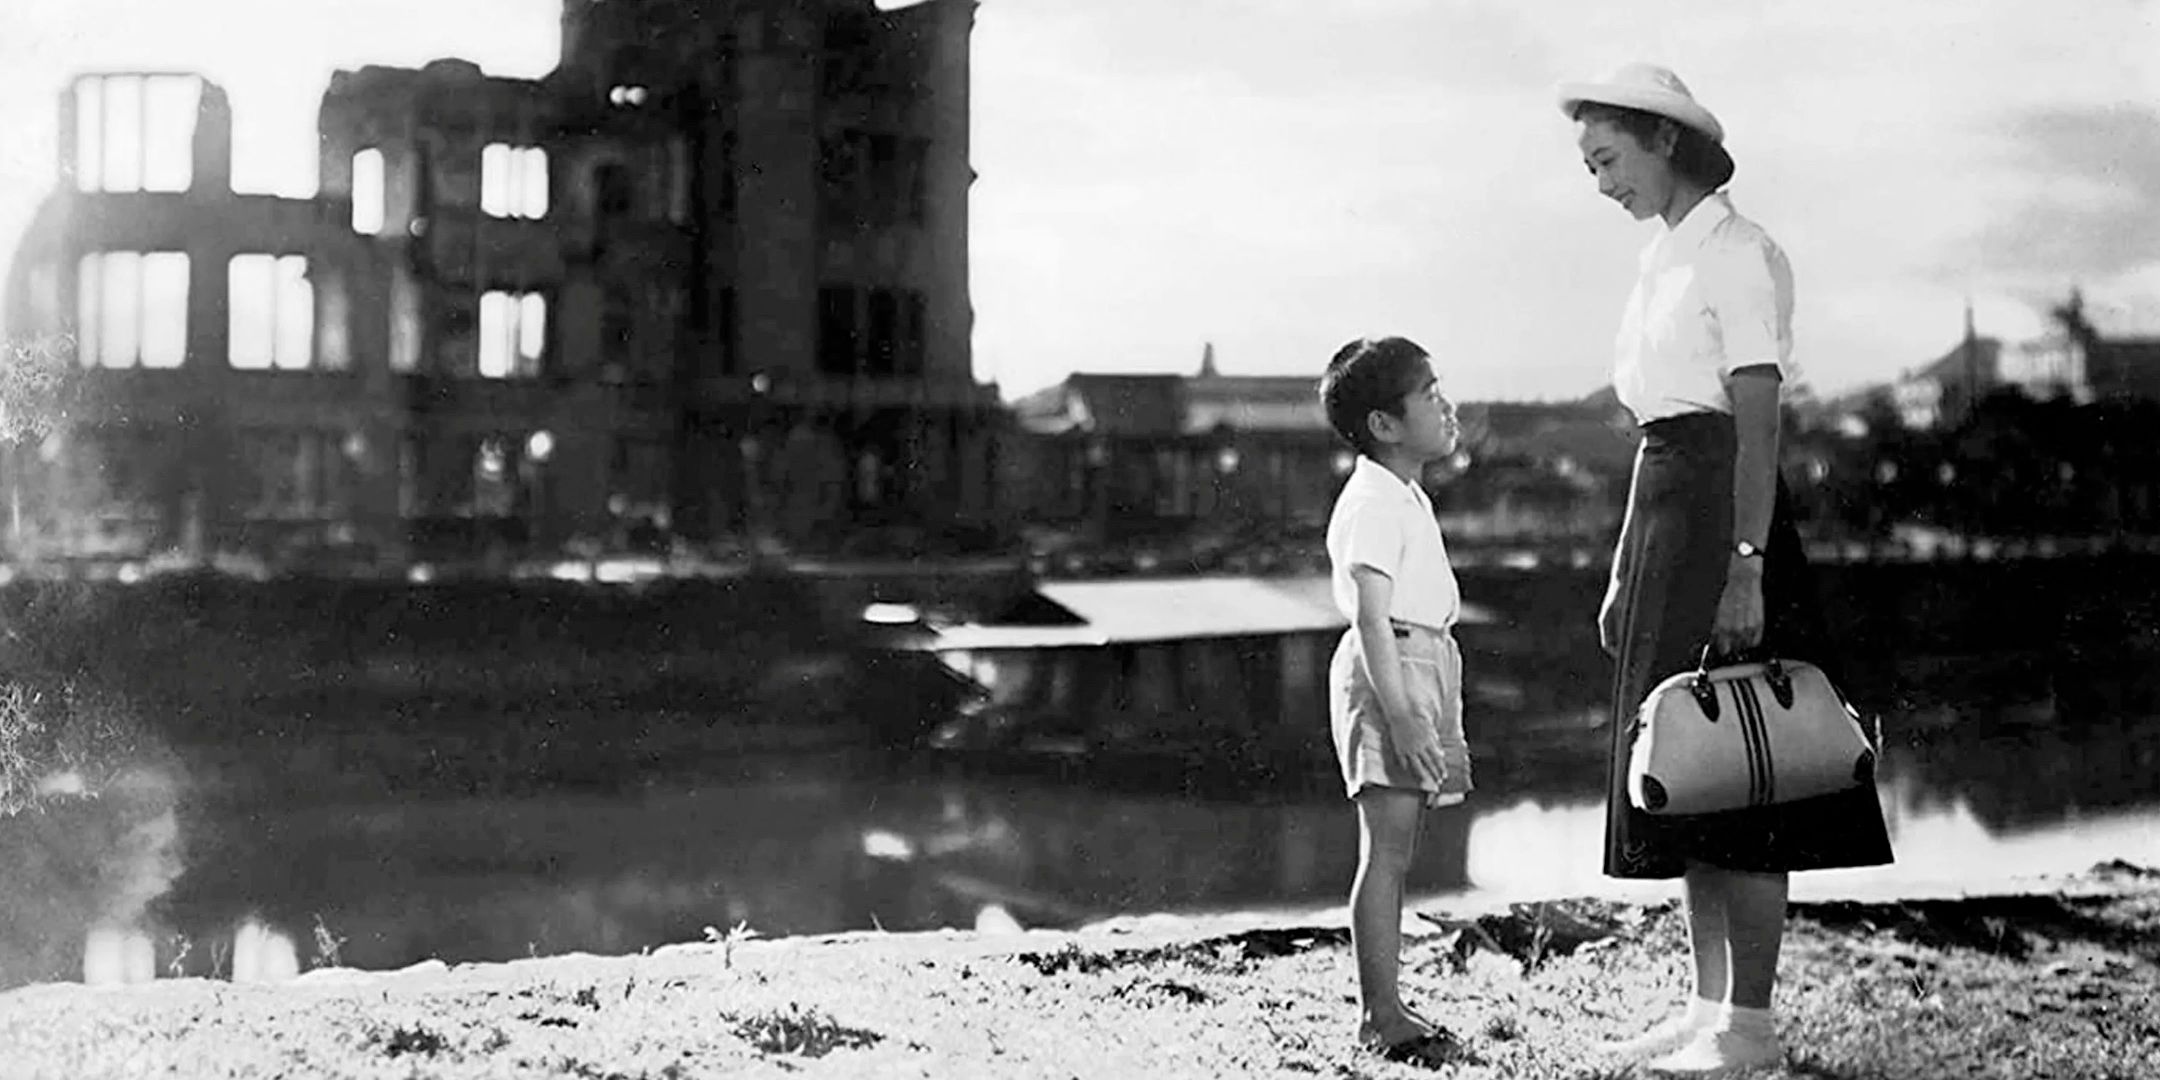 A scene from Japanese film 'Children of Hiroshima' (1952)